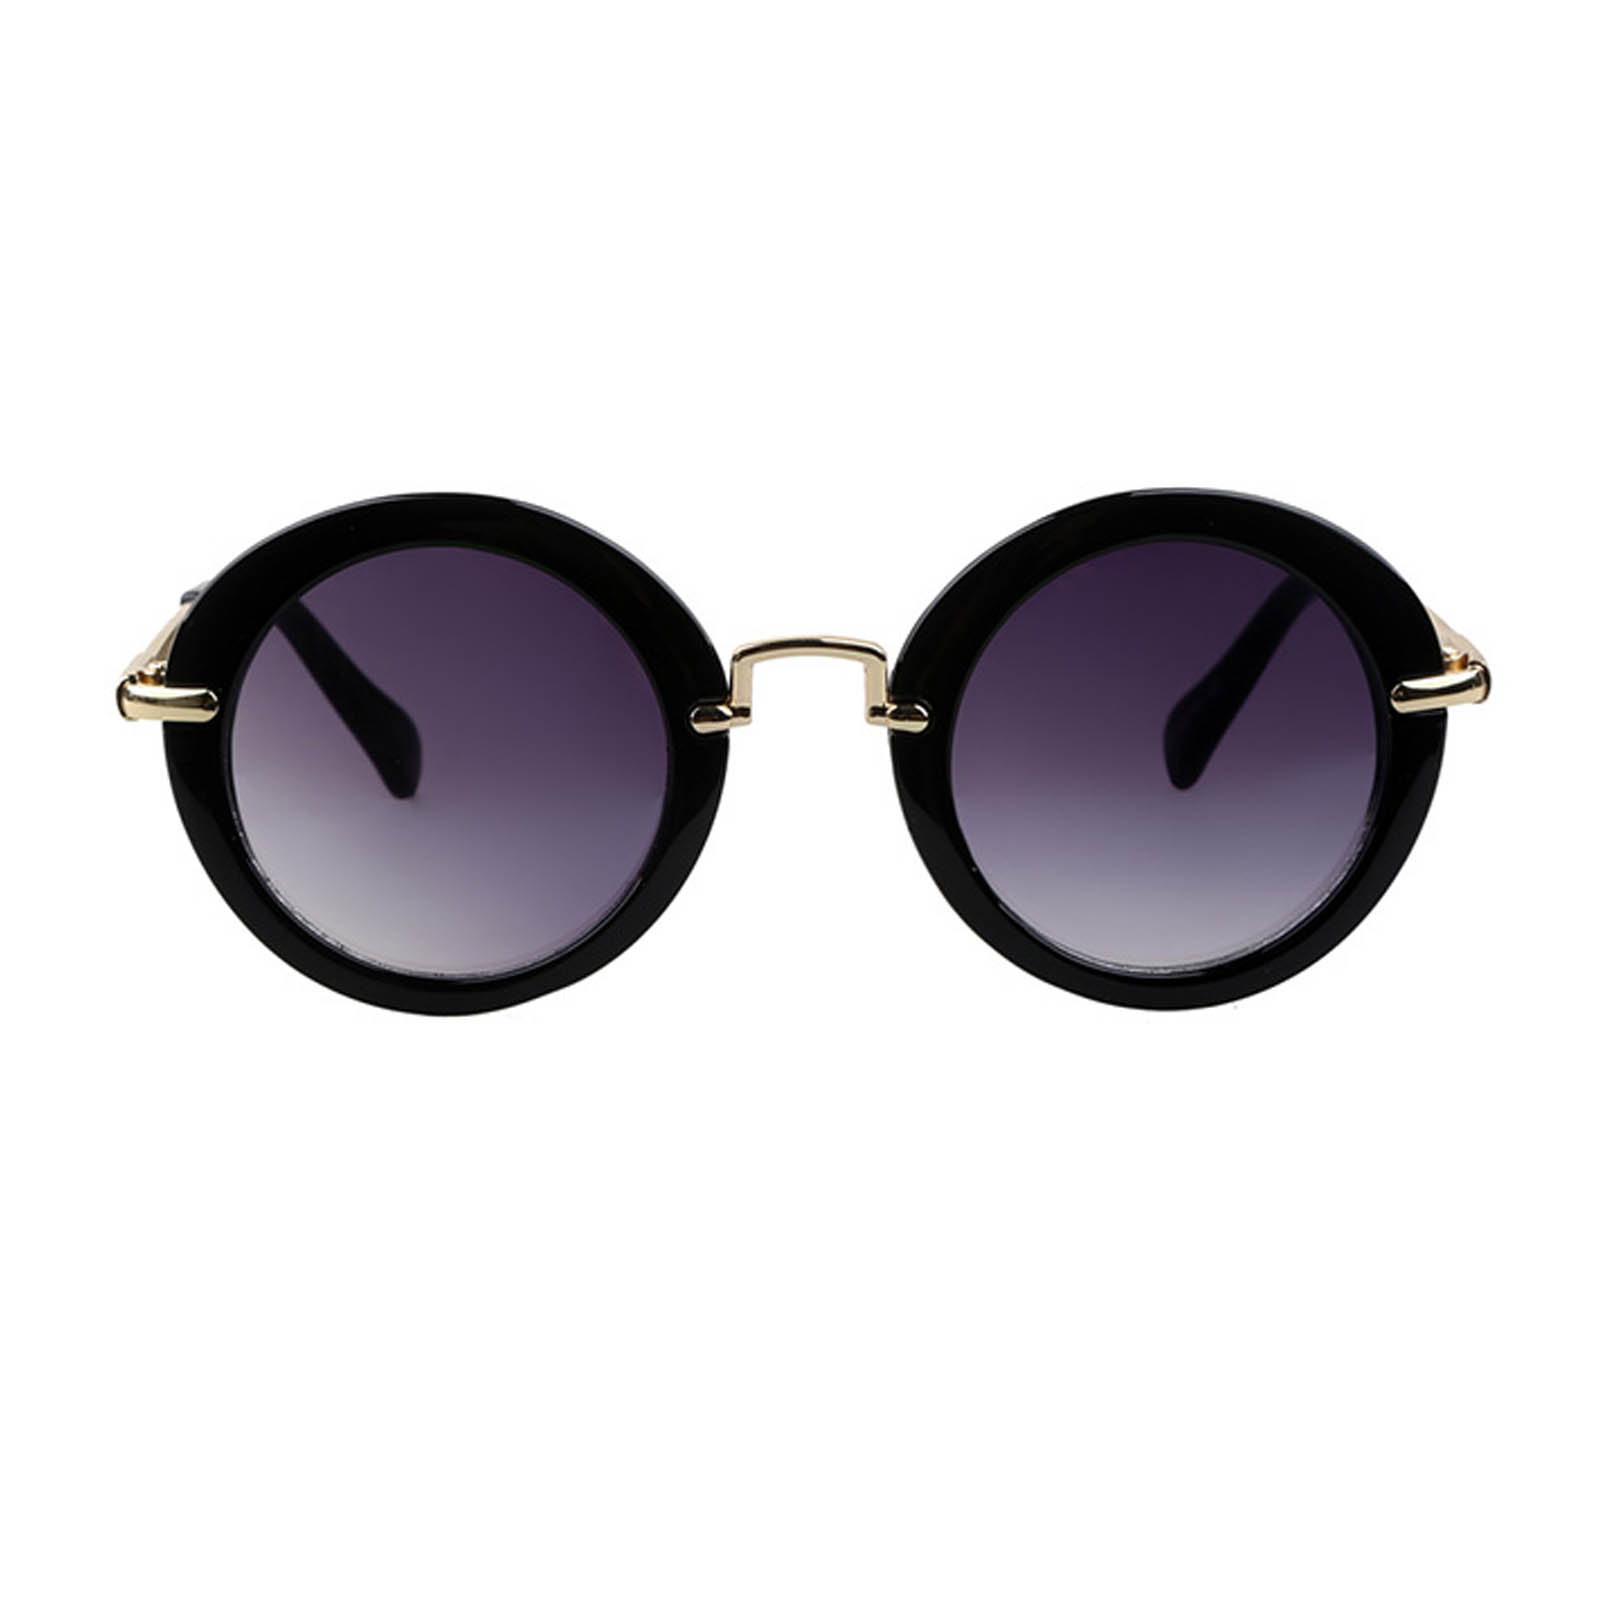 OWL ® 045 C6 Round Eyewear Sunglasses Women’s Men’s Metal Round Circle ...